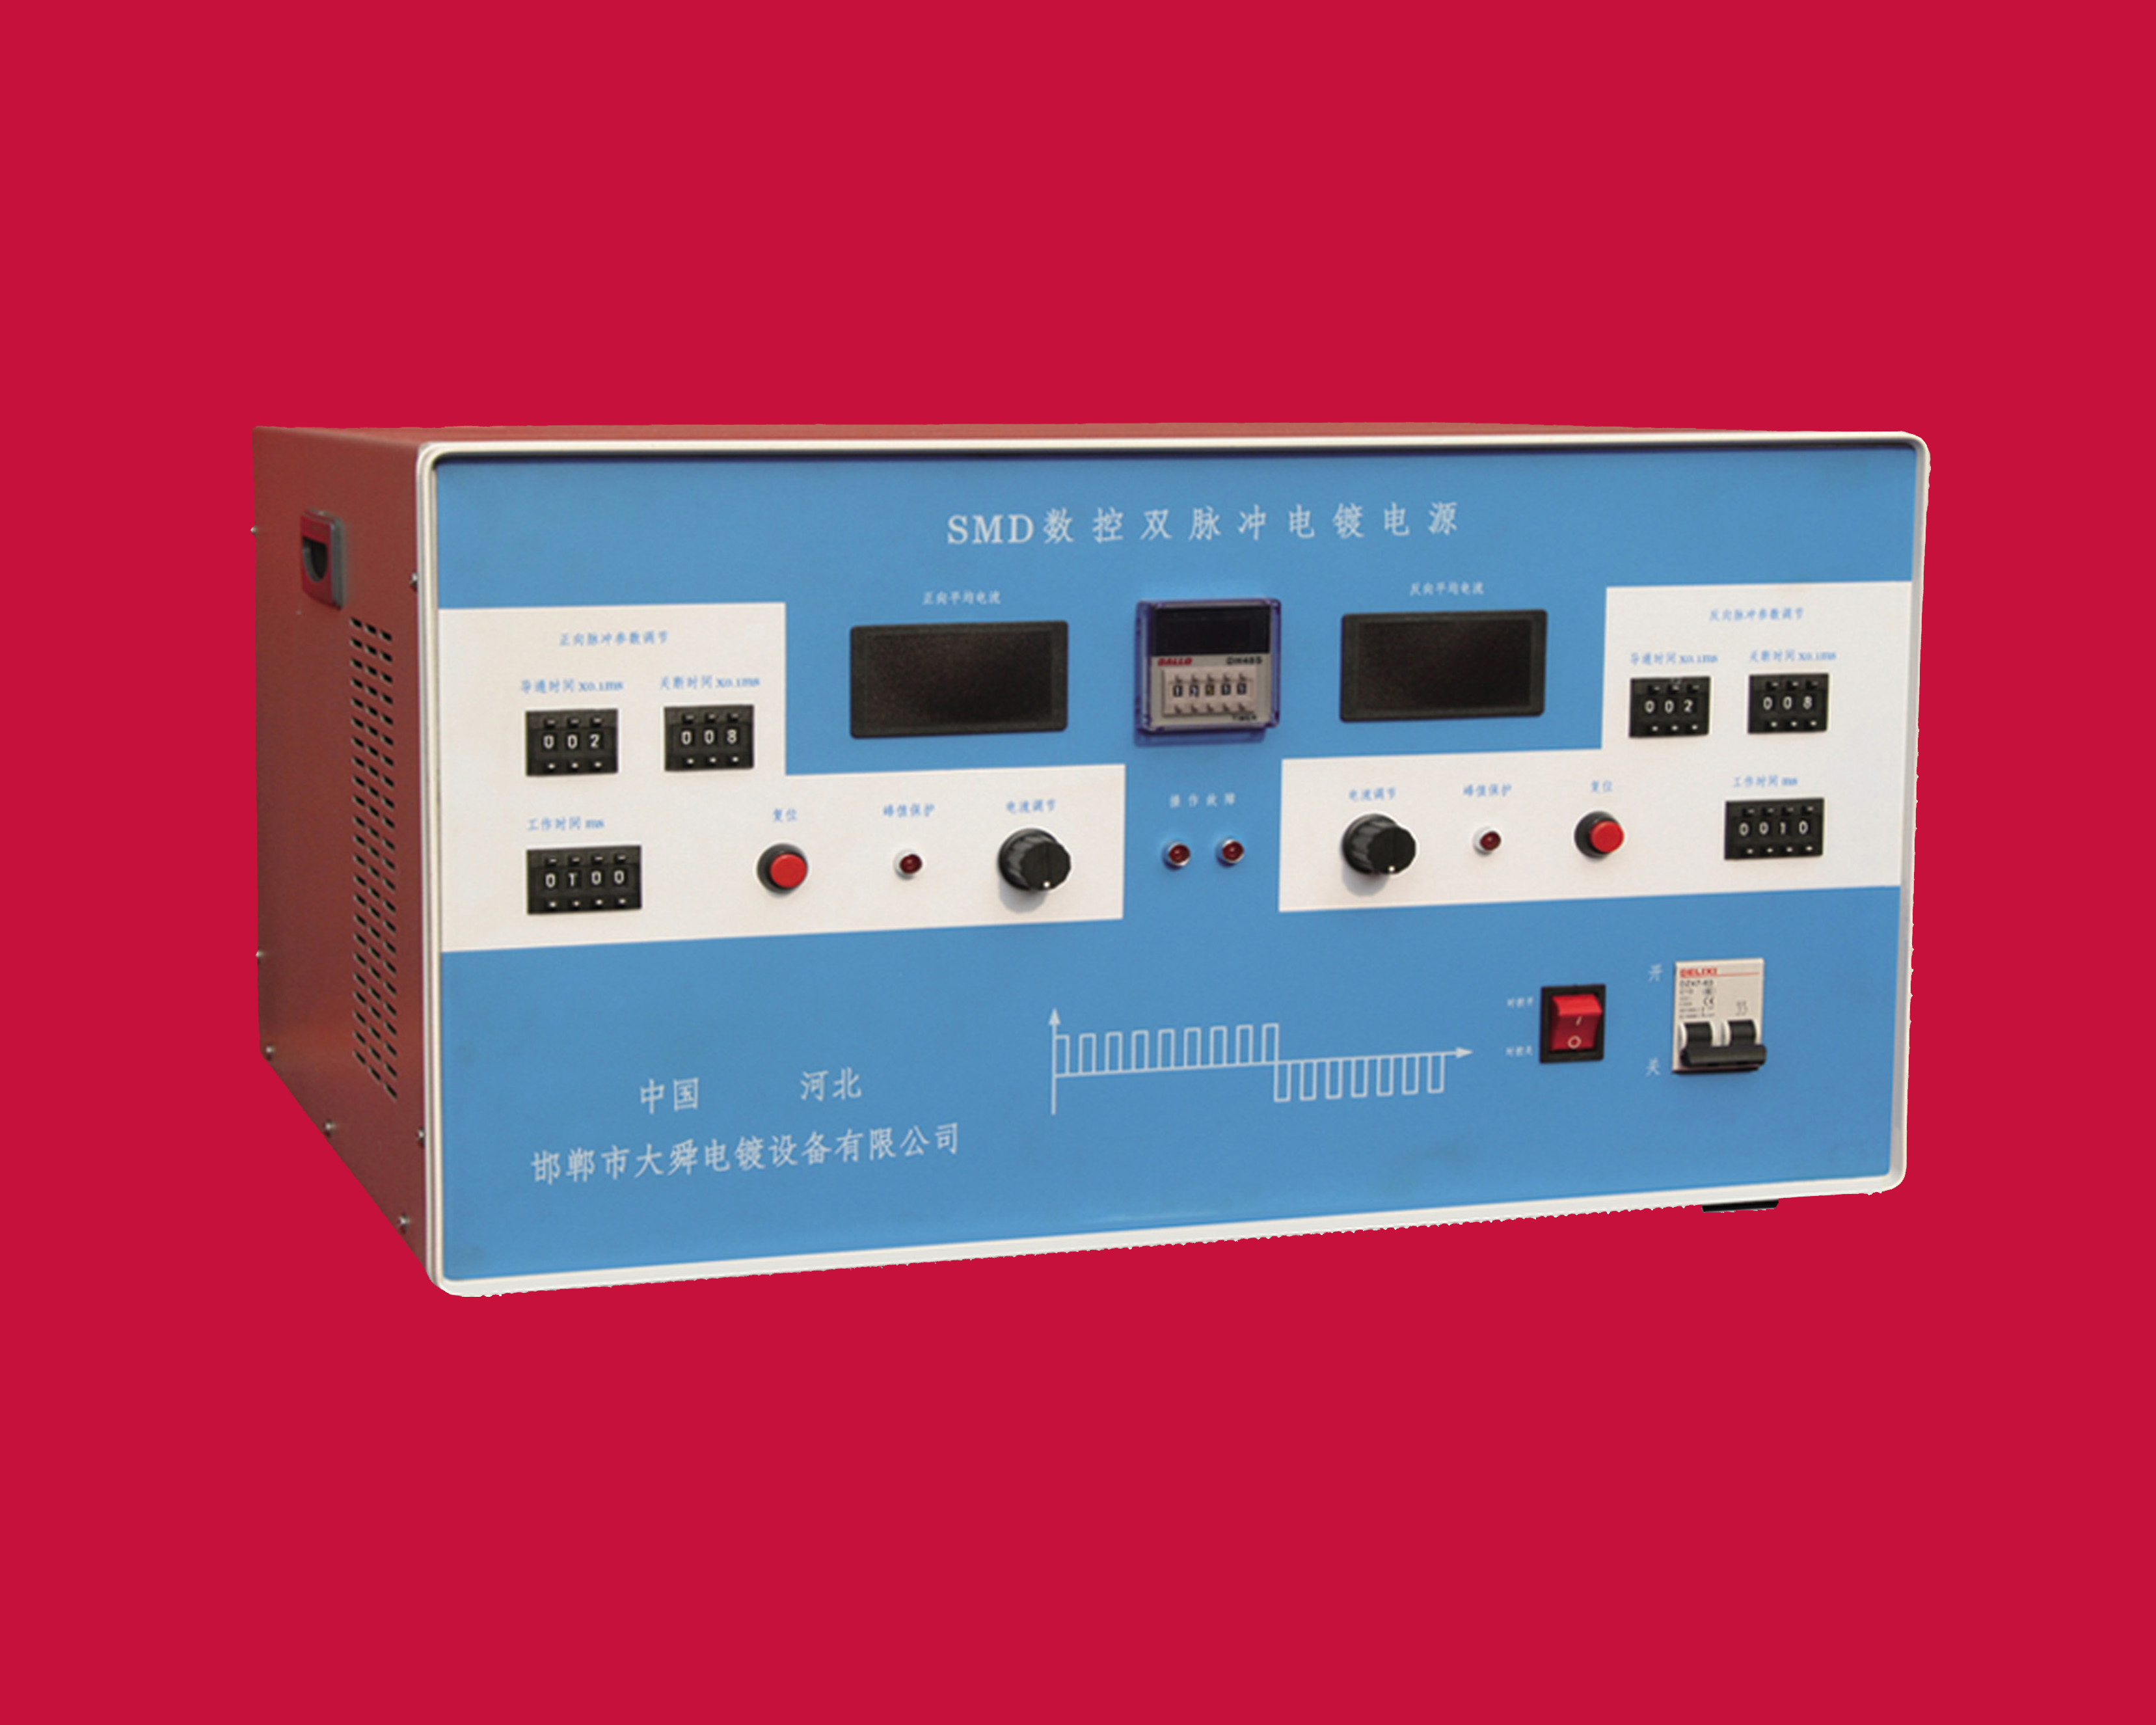 SMD系列數控雙脈沖電鍍電源